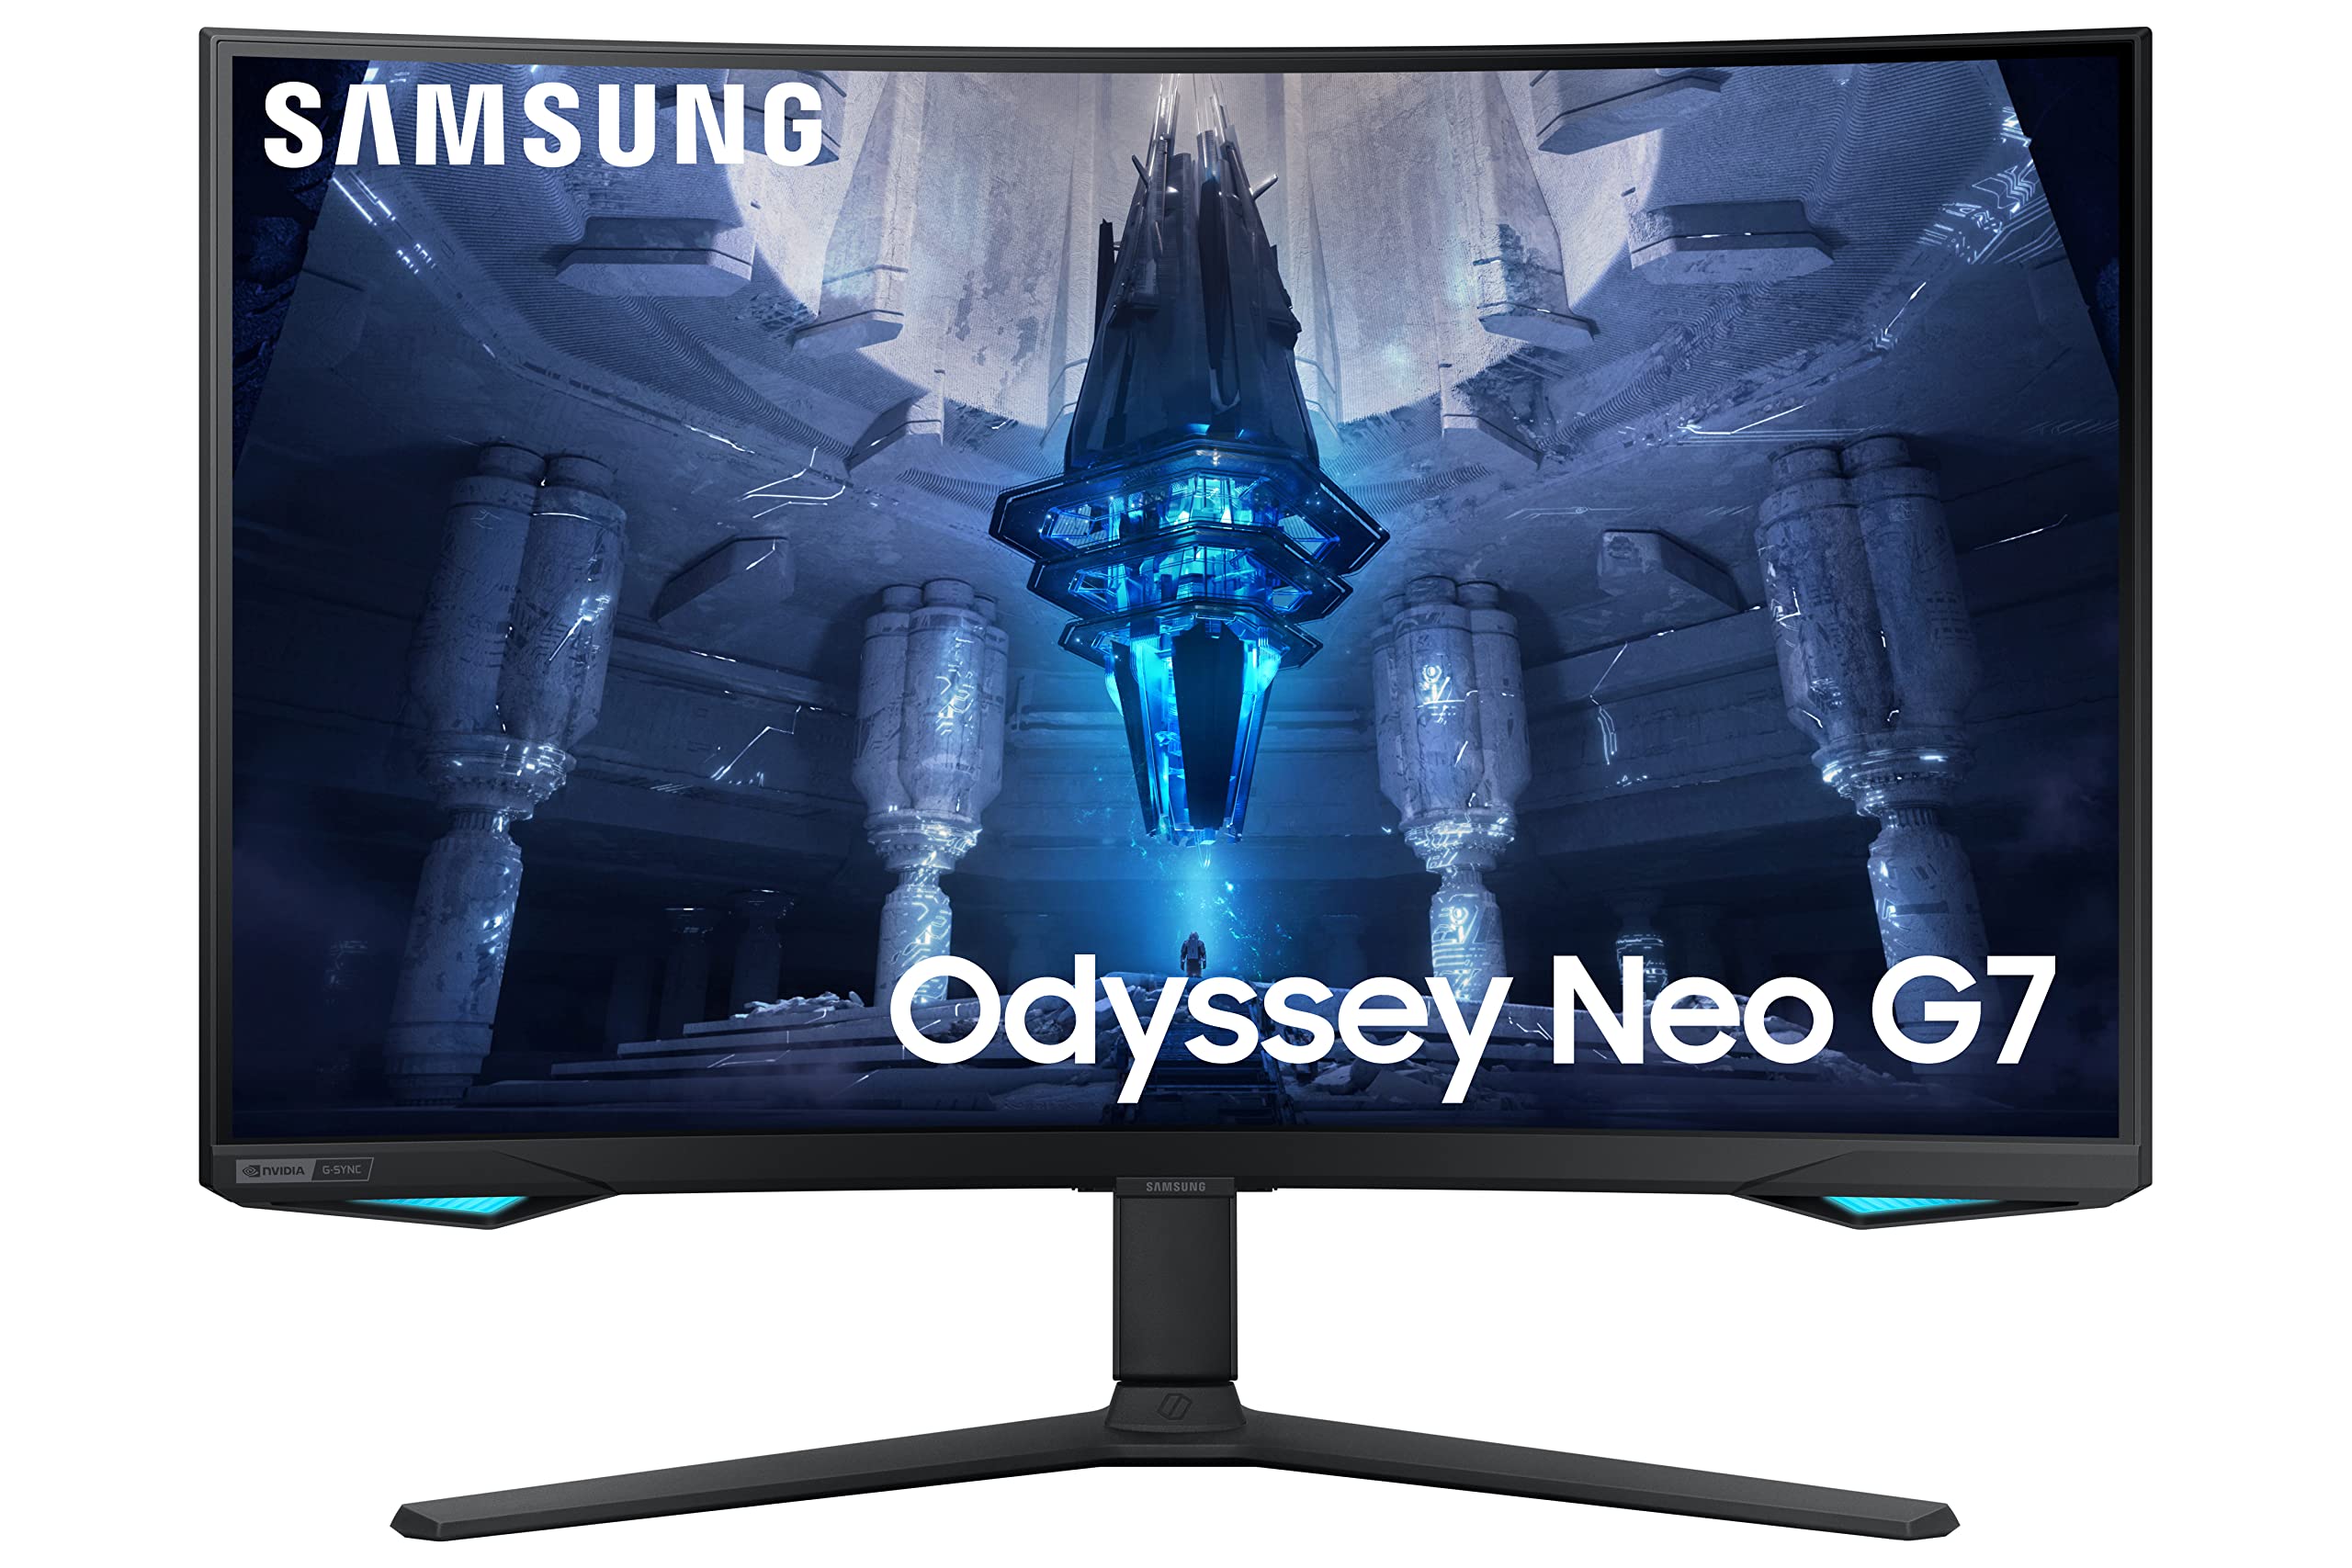 Samsung Odyssey Neo ゲーミング モニター、4K UHD ミニ LED ディスプレイ、曲面スクリーン、240Hz、1ms、G-Sync および FreeSync プレミアム プロ